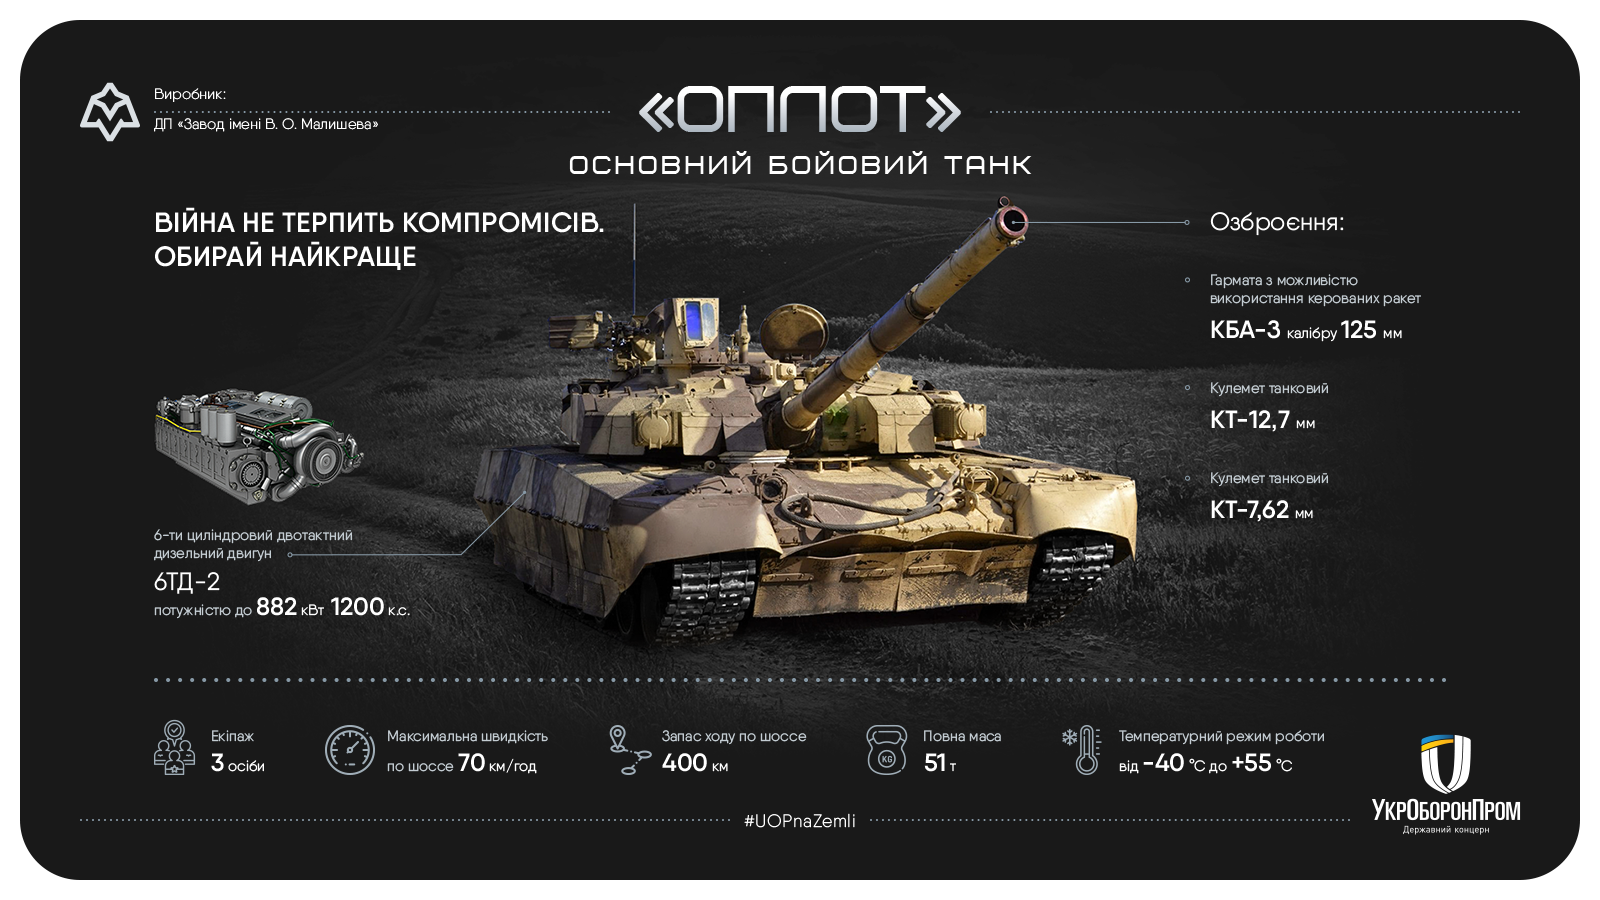 Танк «Оплот», который сделали в Украине, отправили заказчикам в США (фото) - 2 - изображение